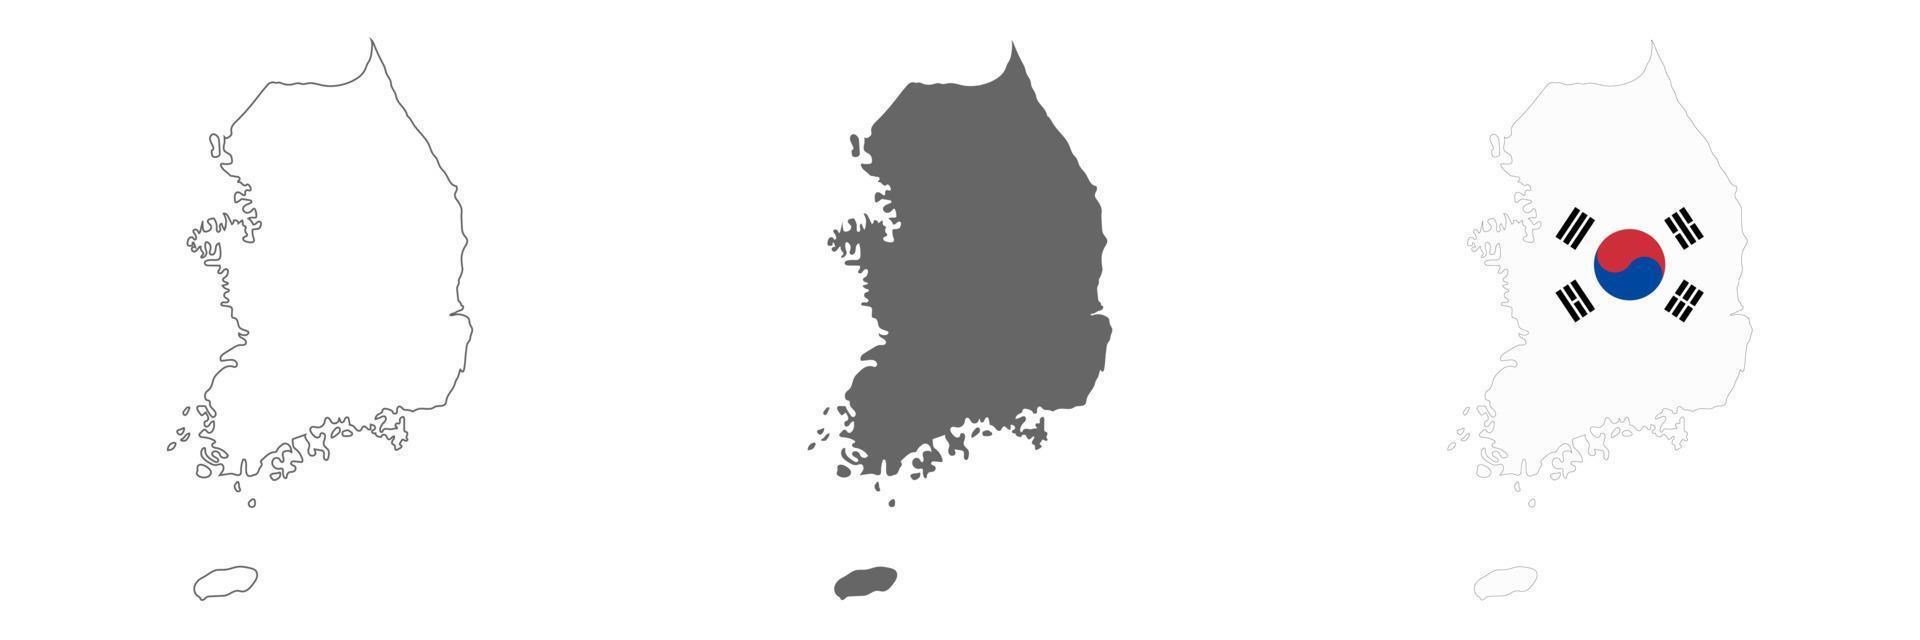 mappa della corea del sud altamente dettagliata con bordi isolati su sfondo vettore